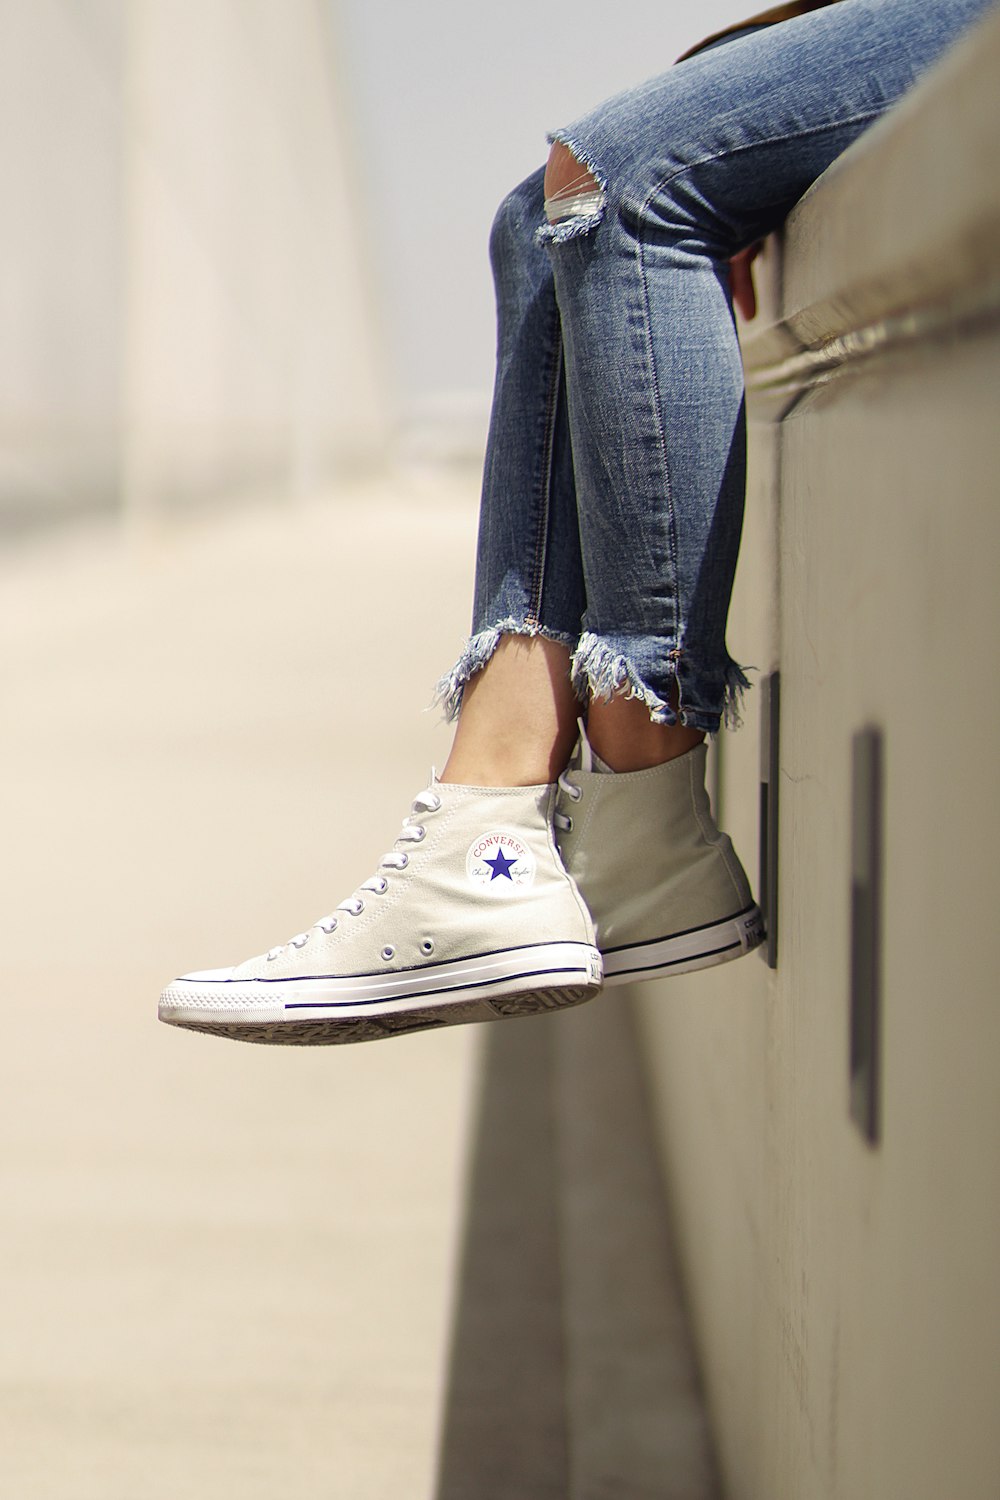 mujer con zapatillas bajas Converse blancas